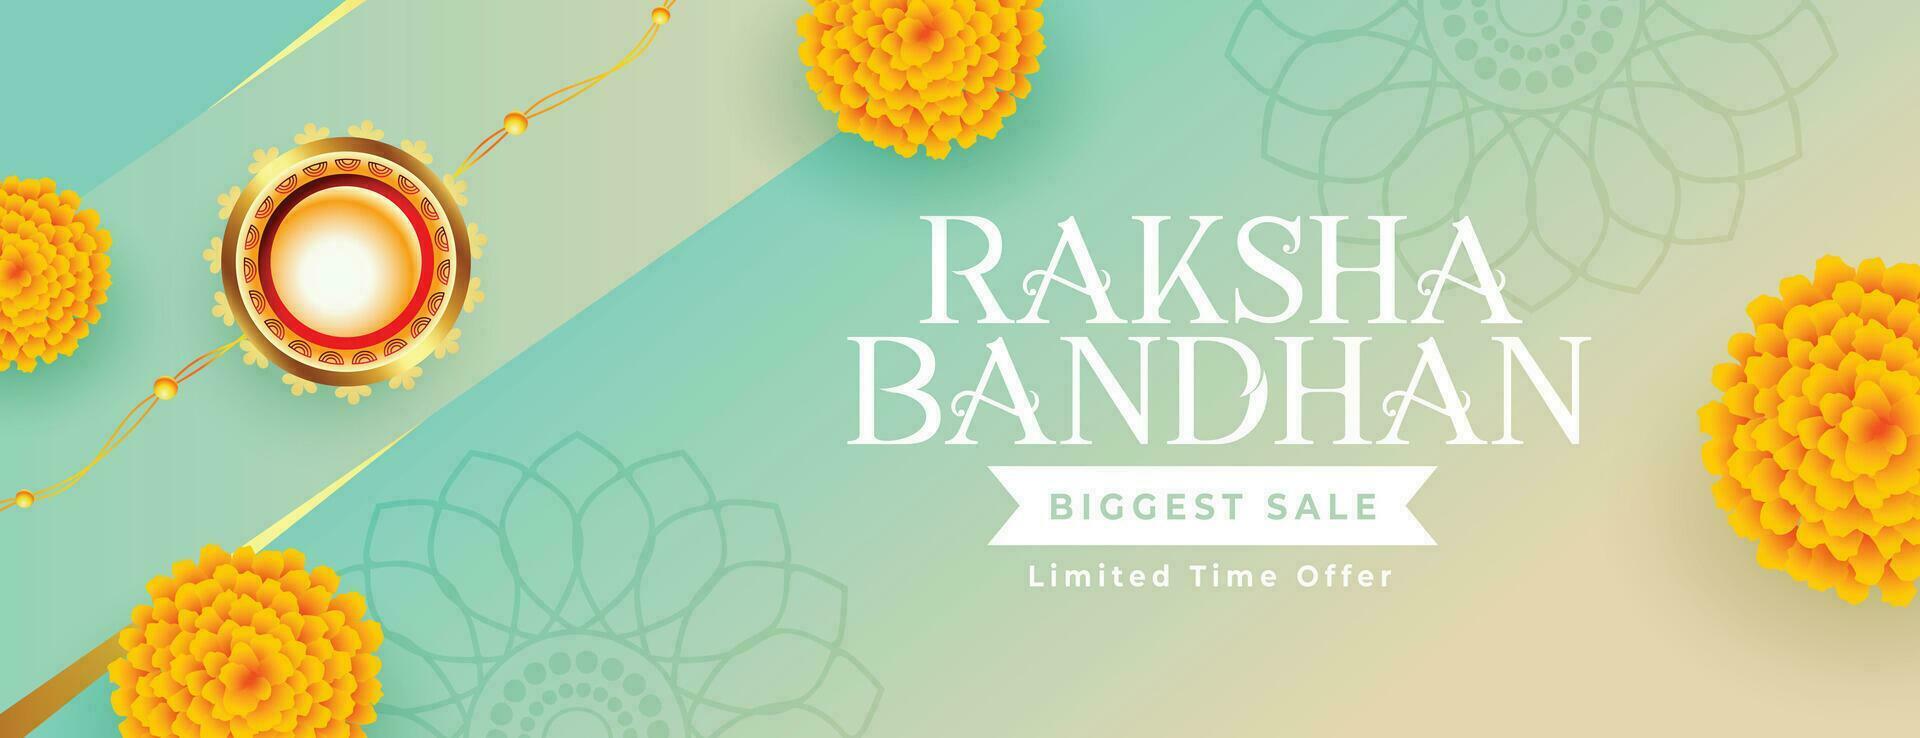 happy raksha bandhan festival sale banner design vector